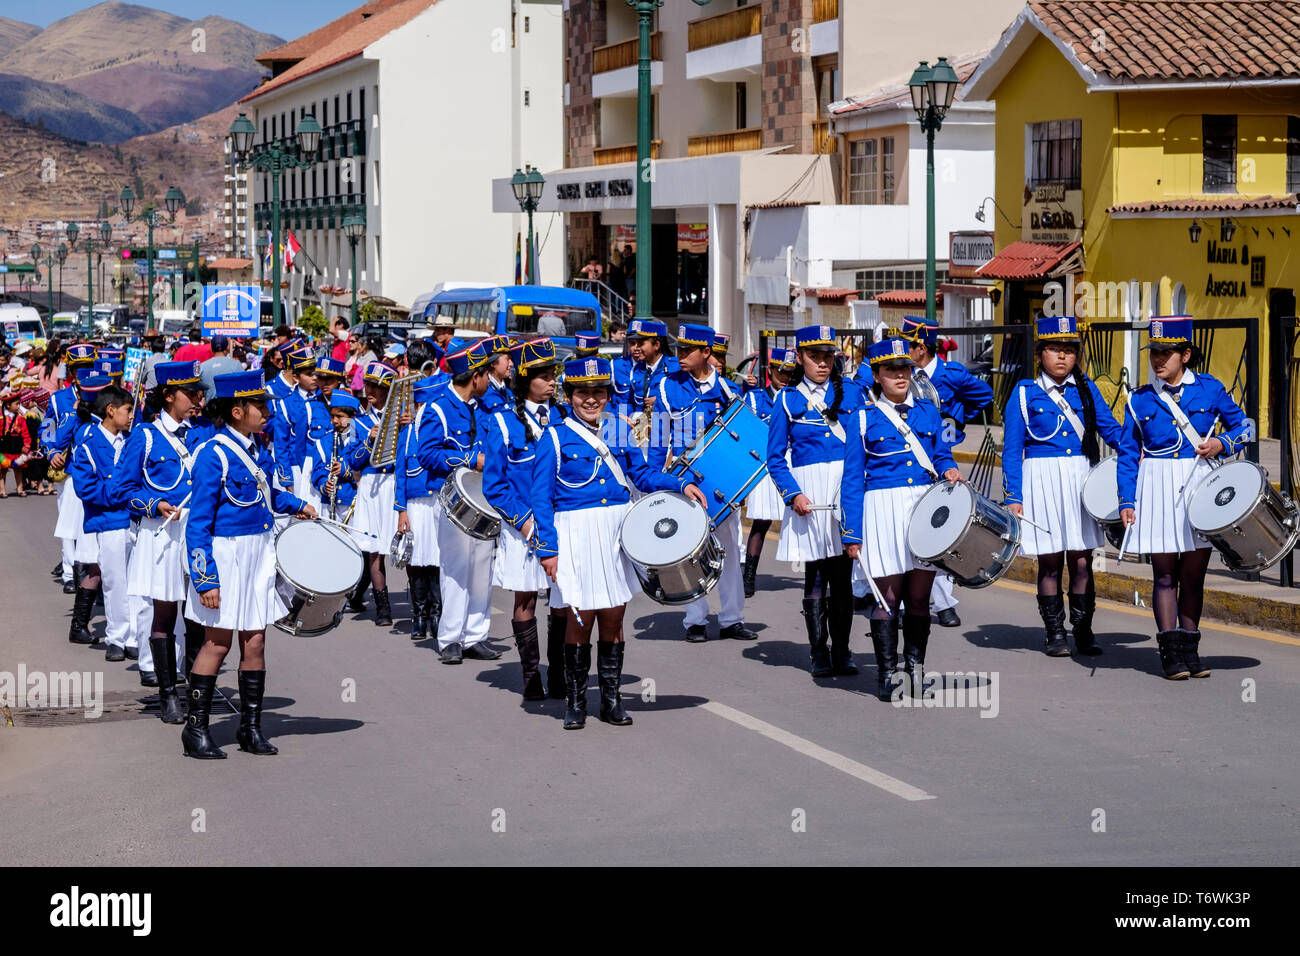 School parade Music Band in uniform in Cusco, Peru Stock Photo - Alamy